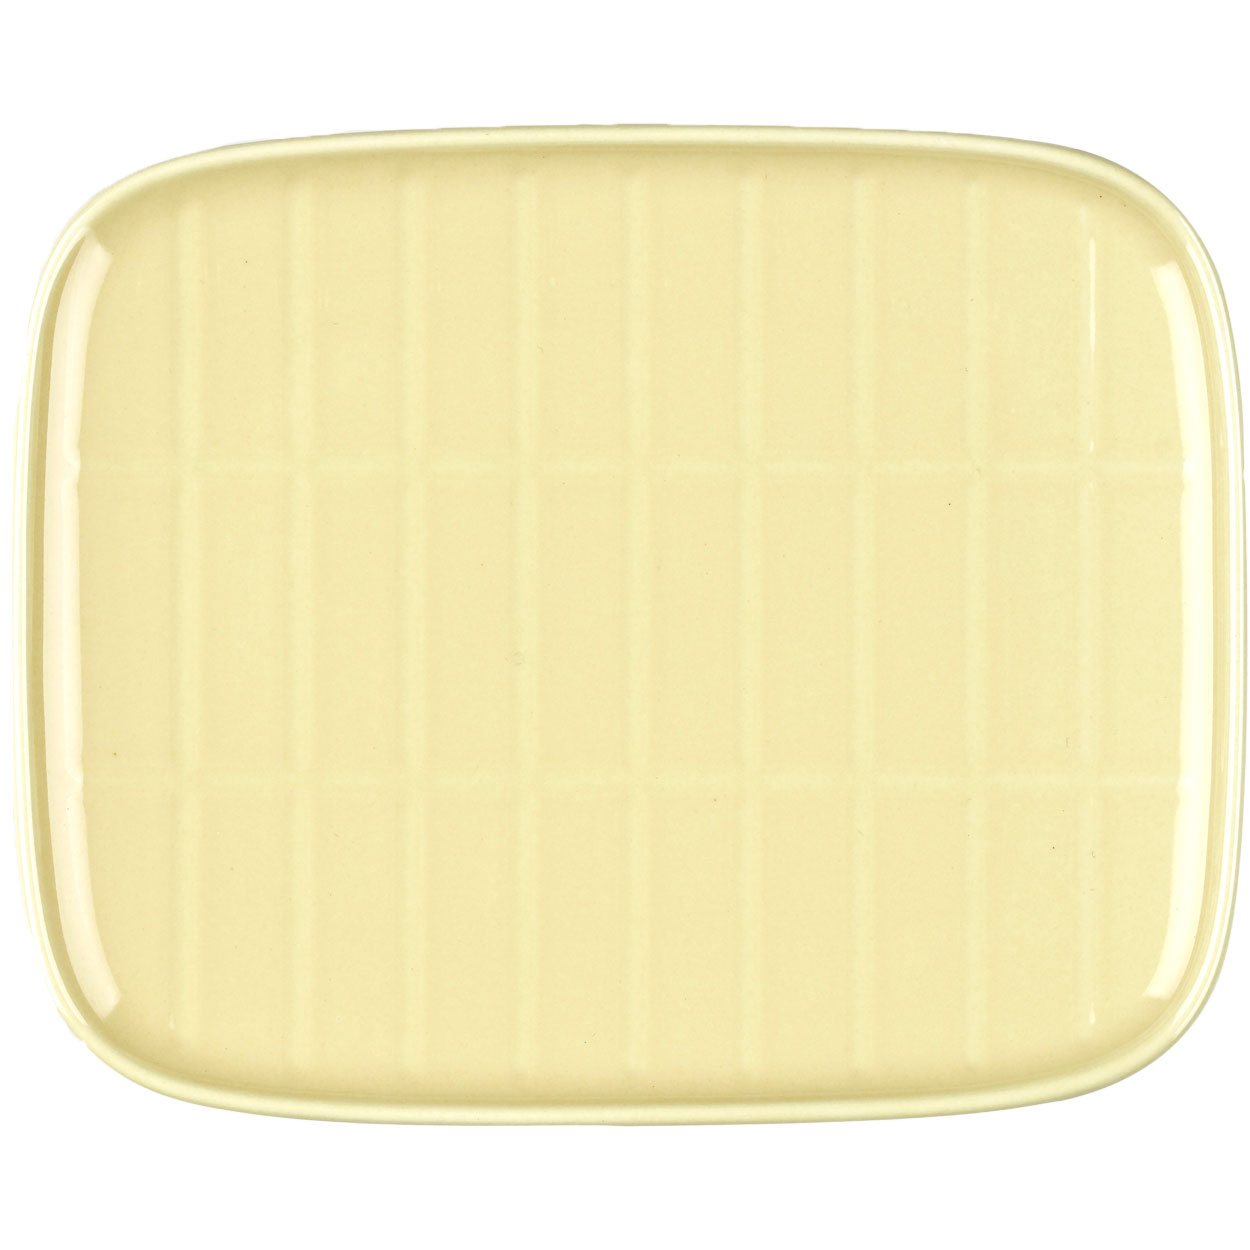 Oiva/Tiiliskivi Teller 12x15 cm, Butter Yellow